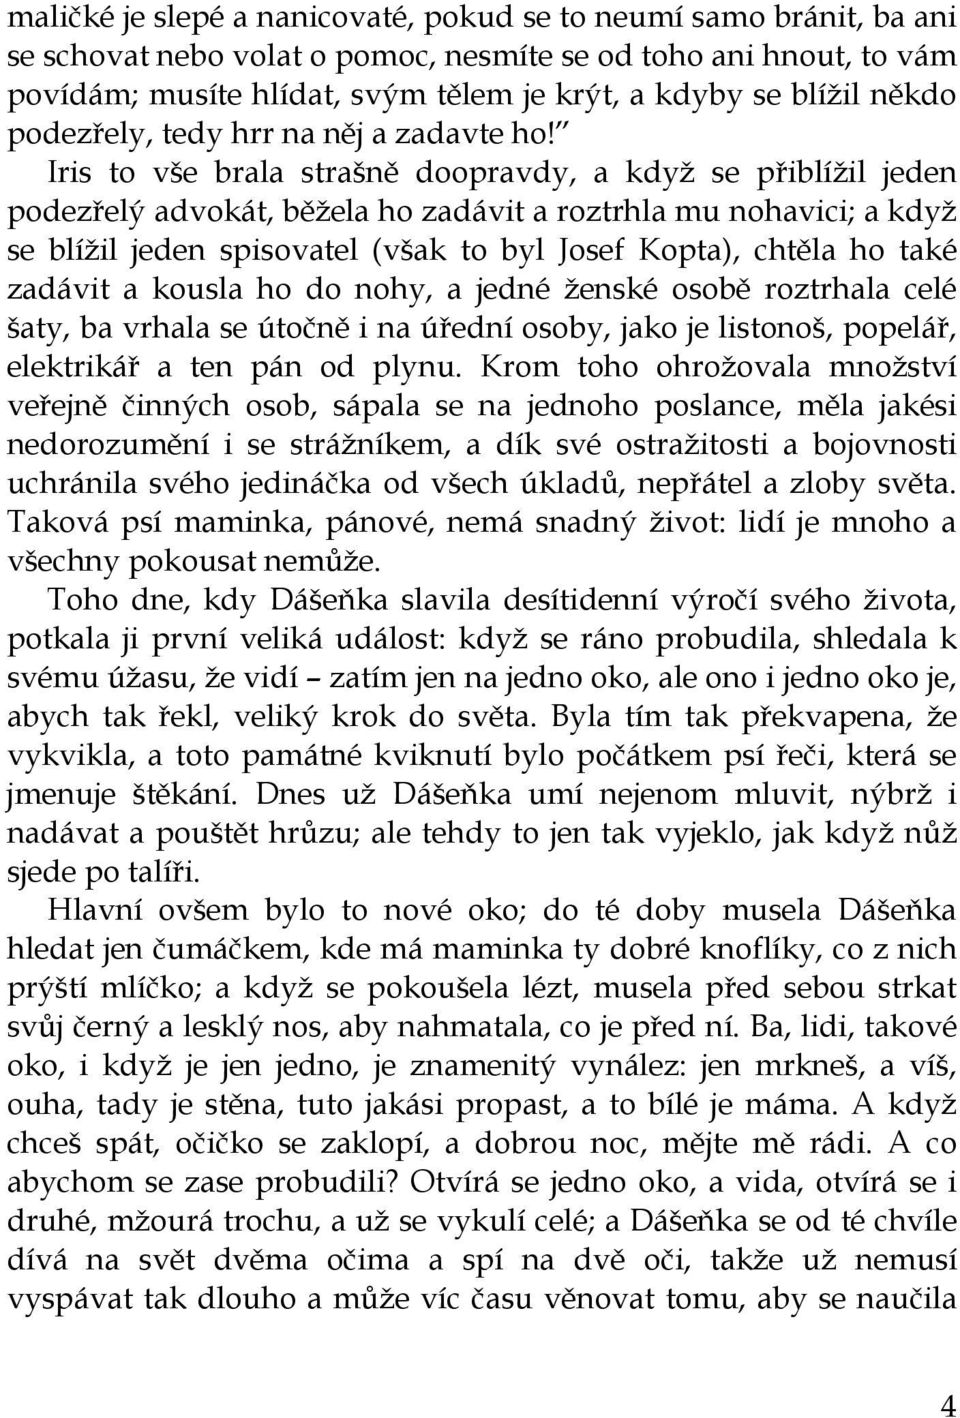 Karel Čapek. DÁŠEŇKA čili Život štěněte - PDF Free Download